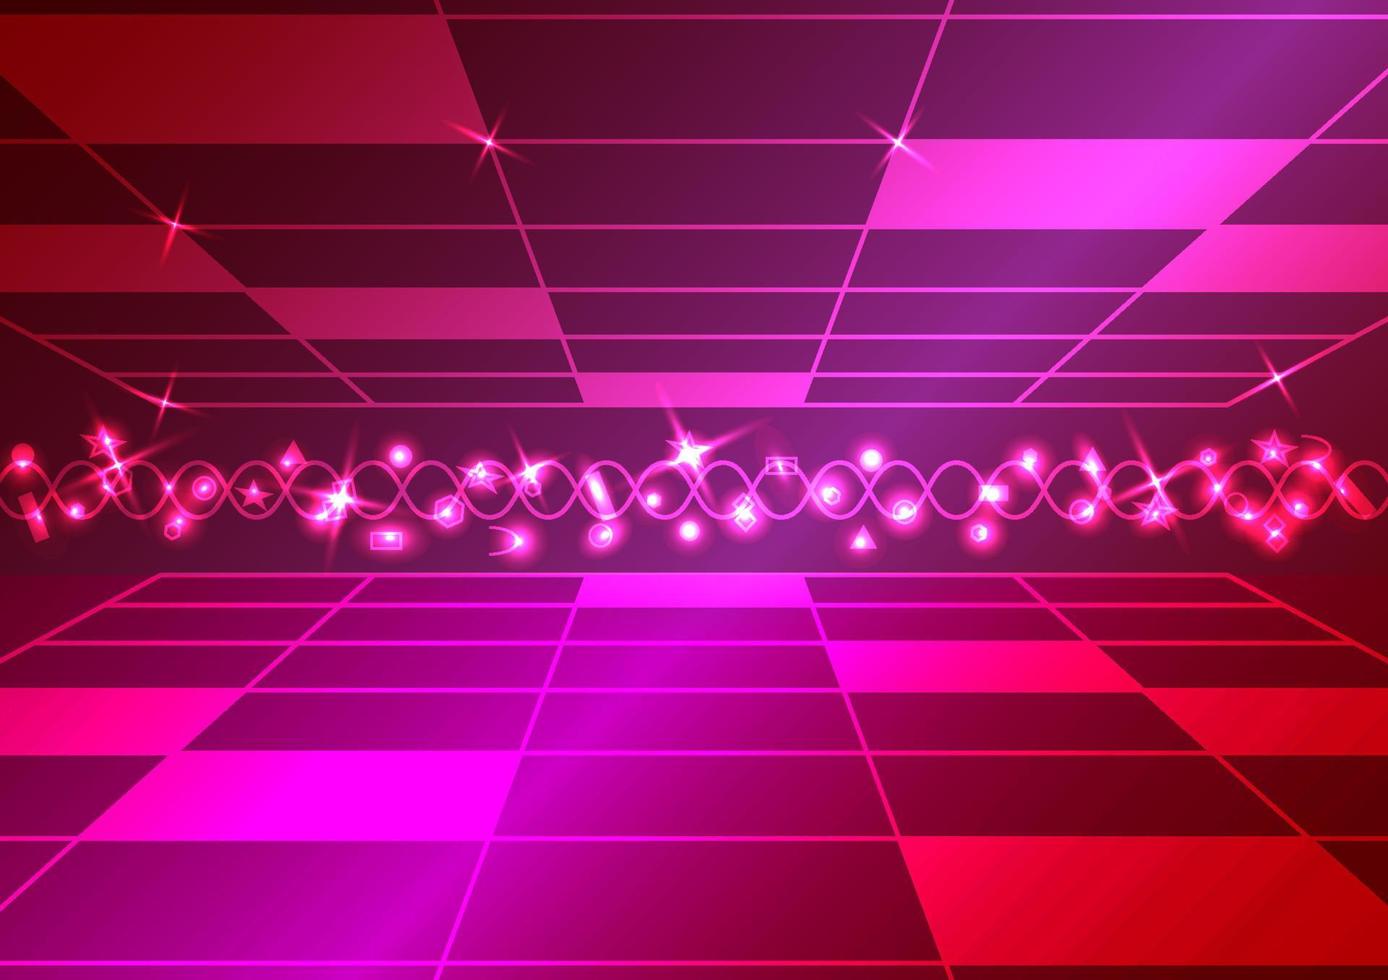 festival sazonal de natal estrela discoteca tecnologia luz de fundo abstrato brilhante internet fibra brilho design ilustração vetorial vetor